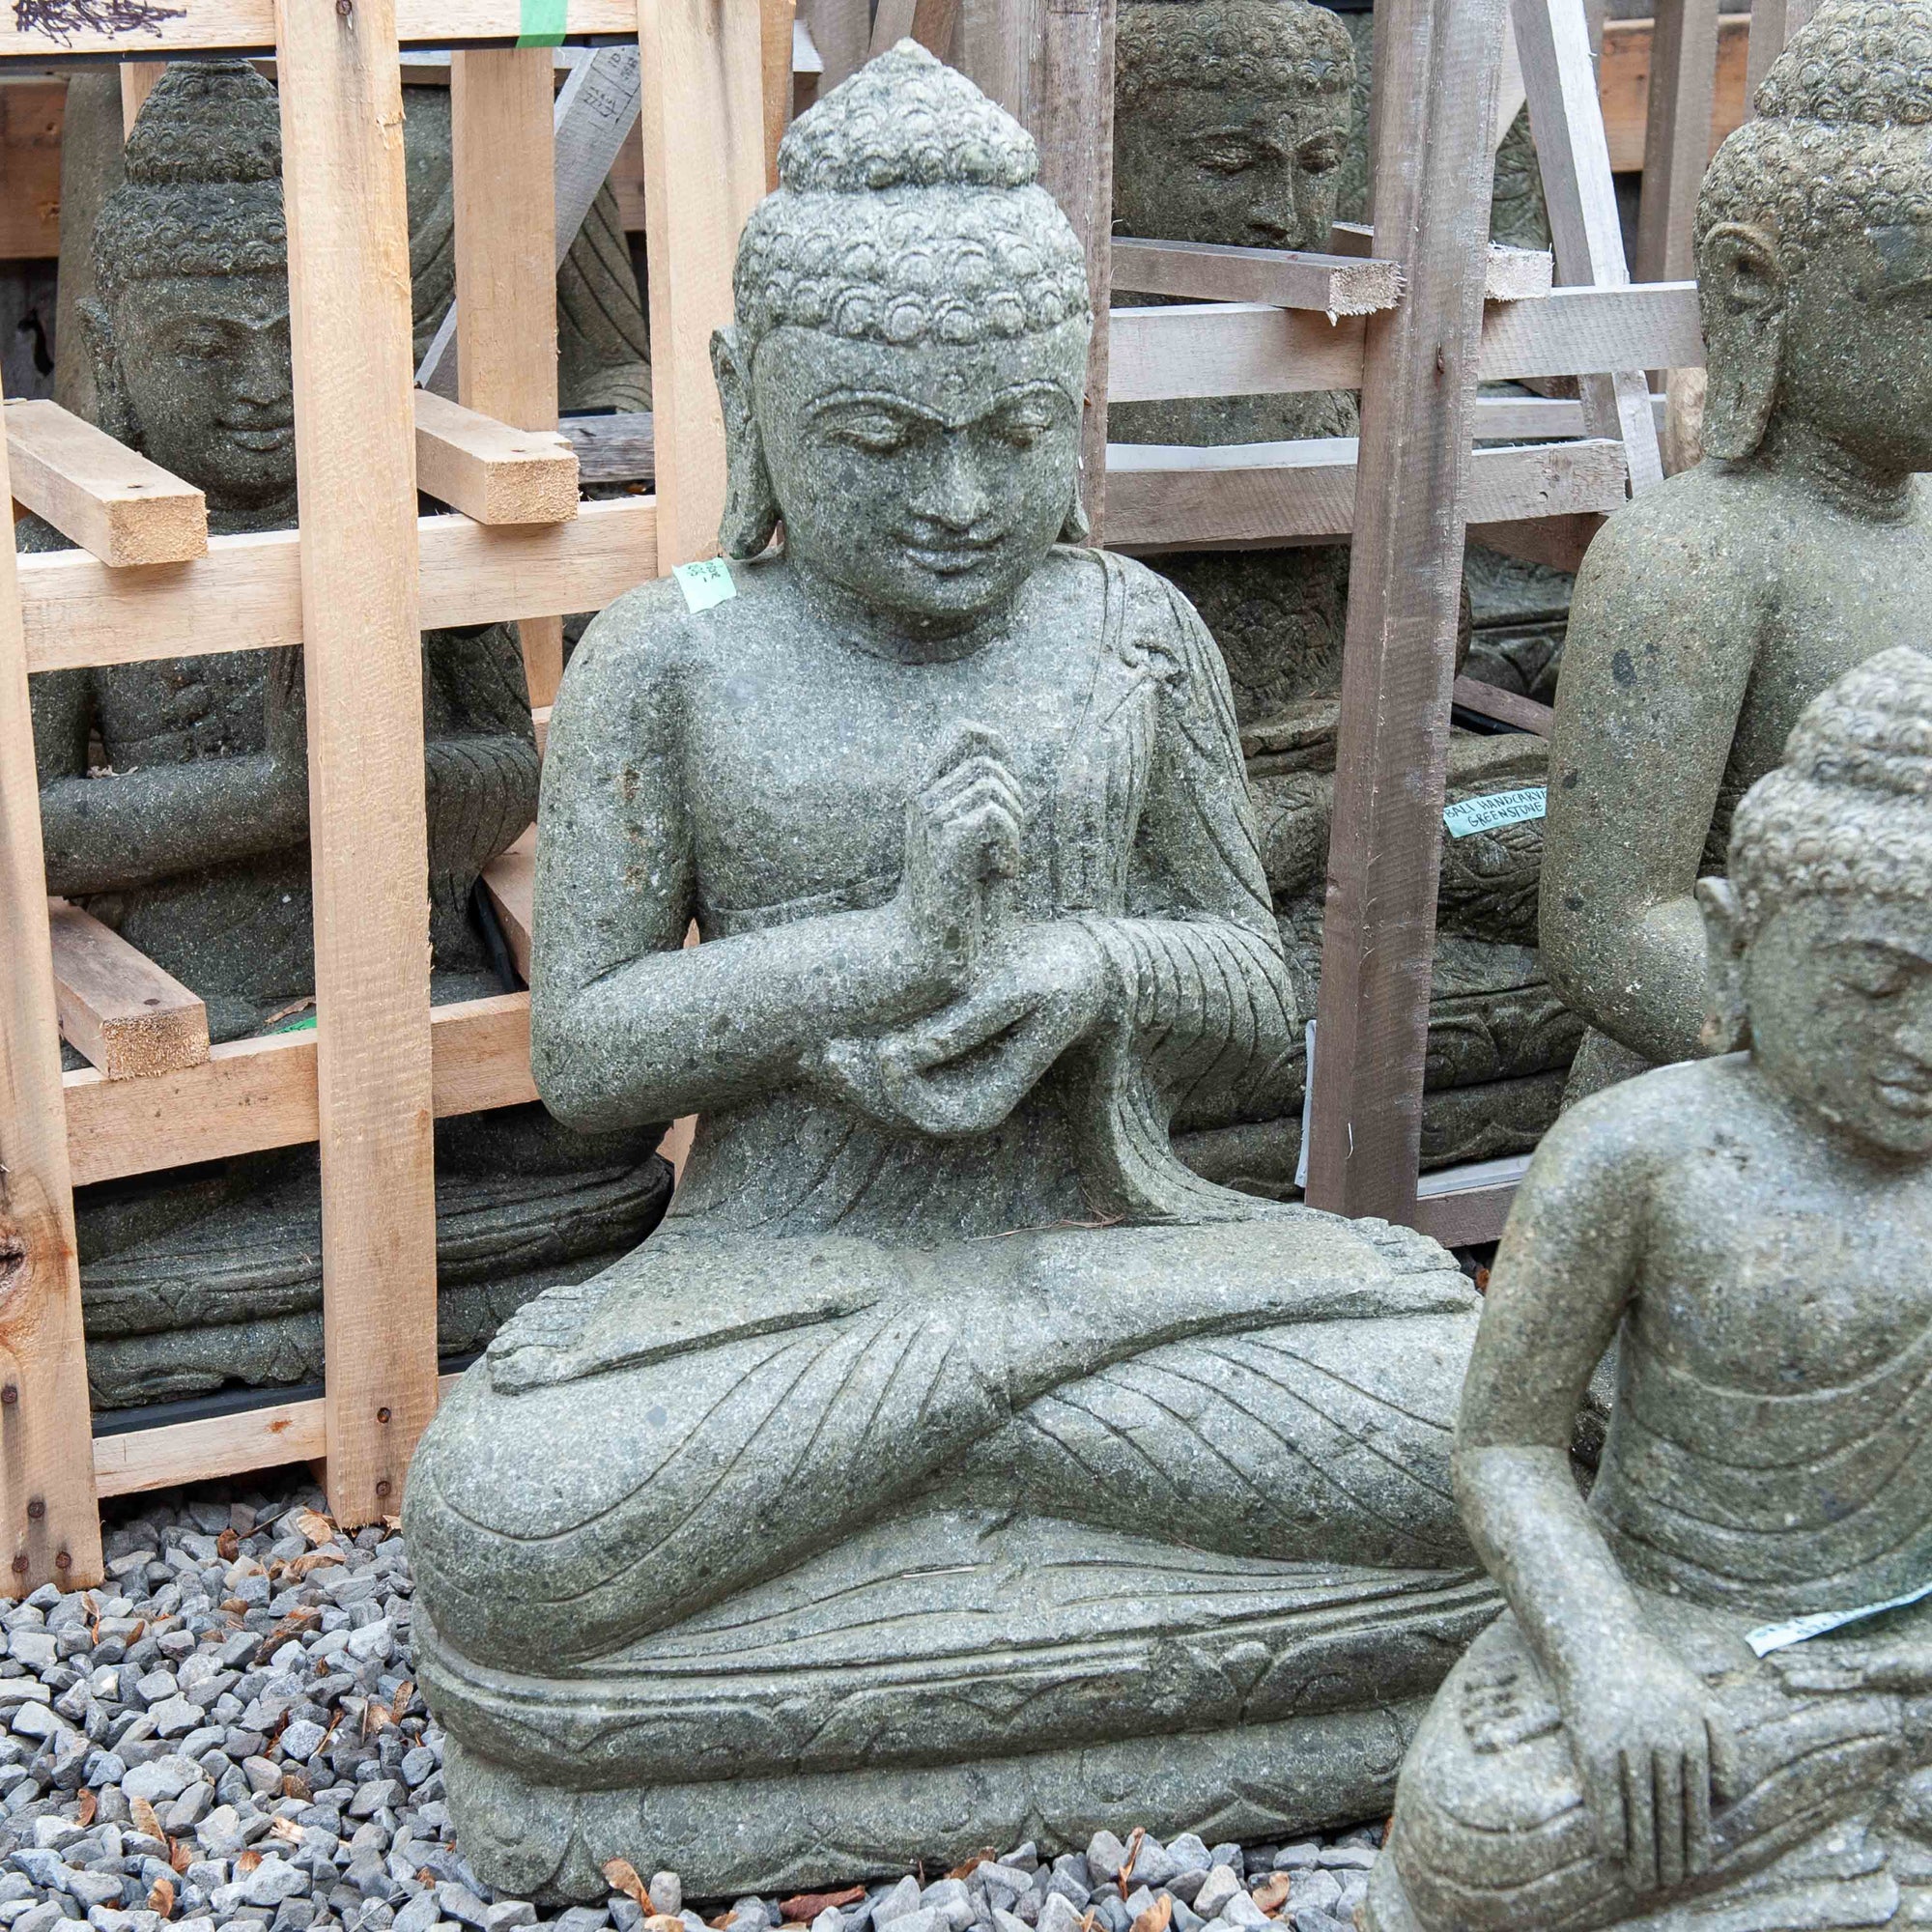 Balinese Hand-carved Stone Teaching Buddha - Medium